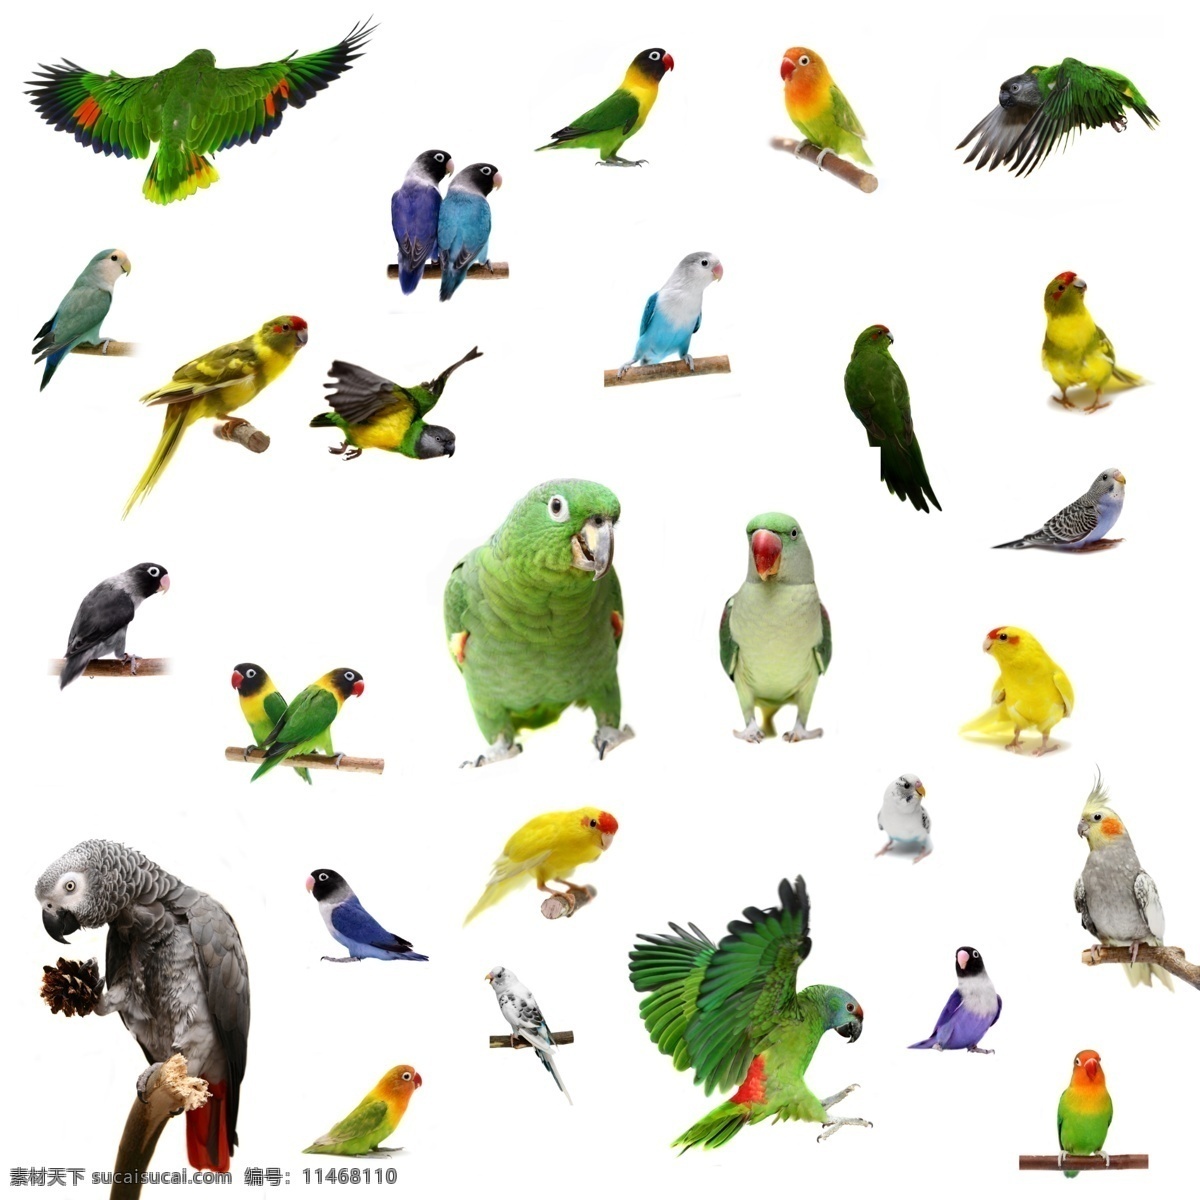 动物世界 鸟类 彩色的鸟 鹦鹉 鸽子 鸳鸯 生物世界 野生动物